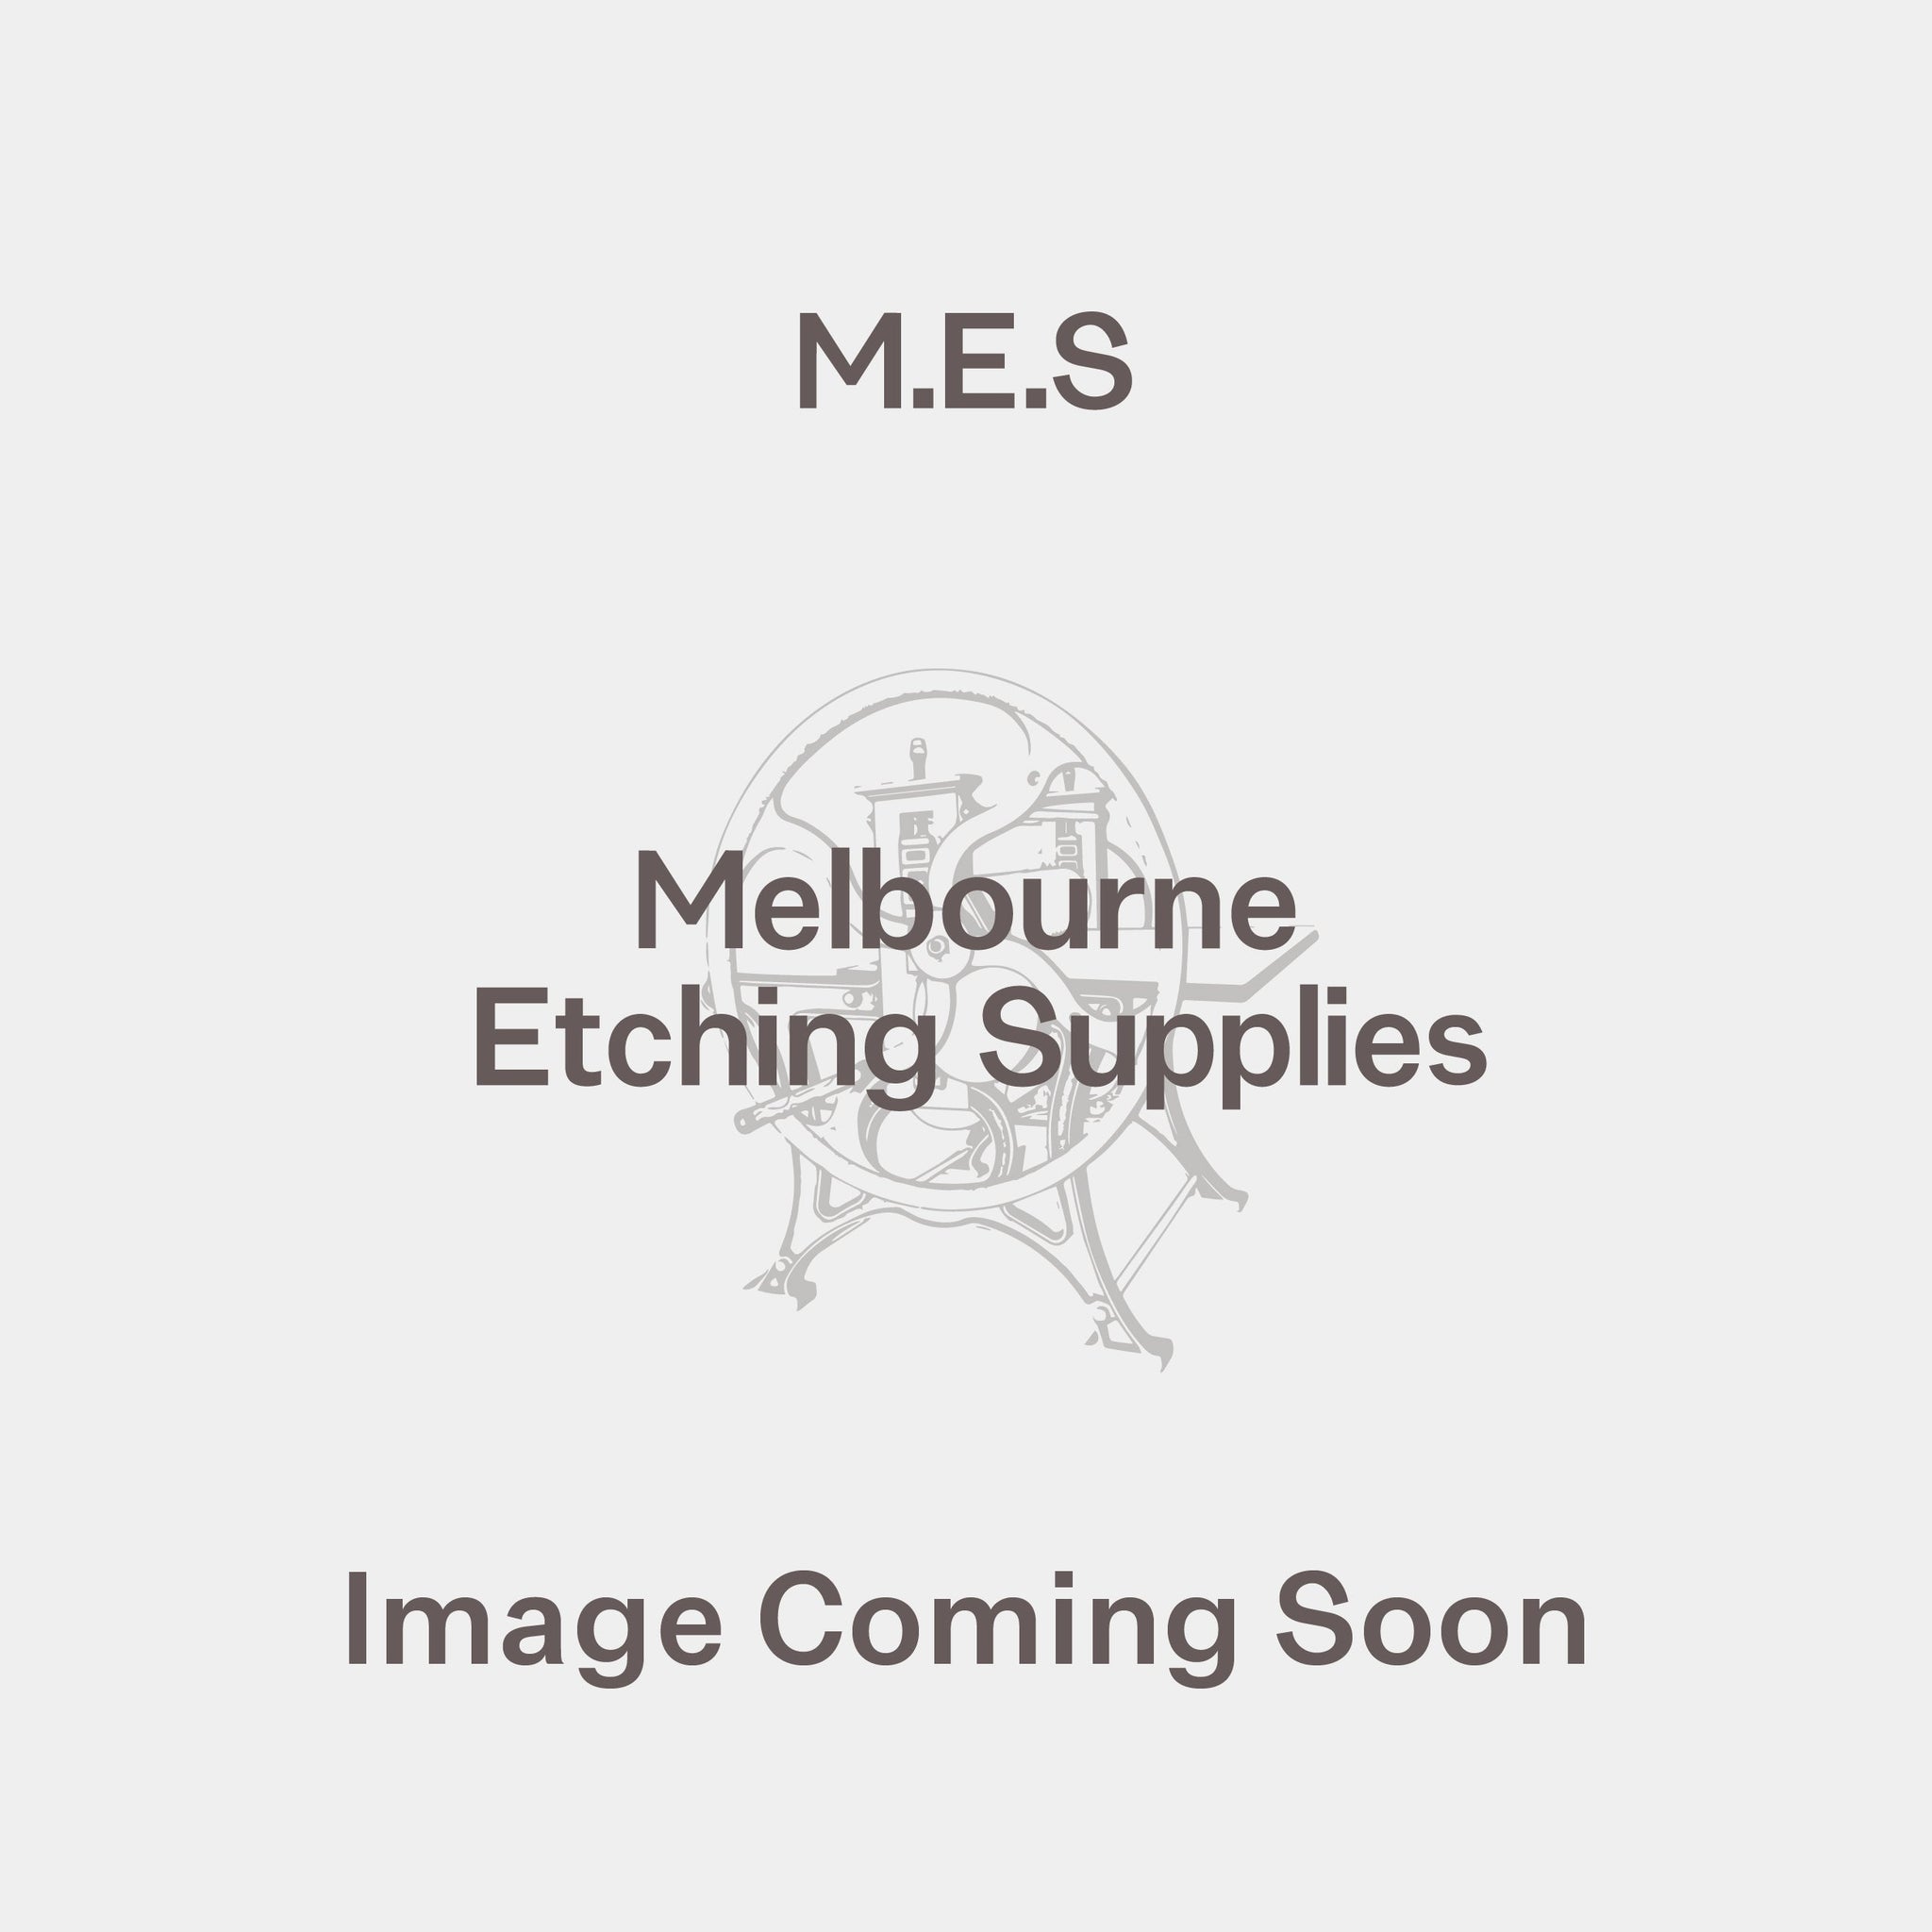 Tissue - Melbourne Etching Supplies